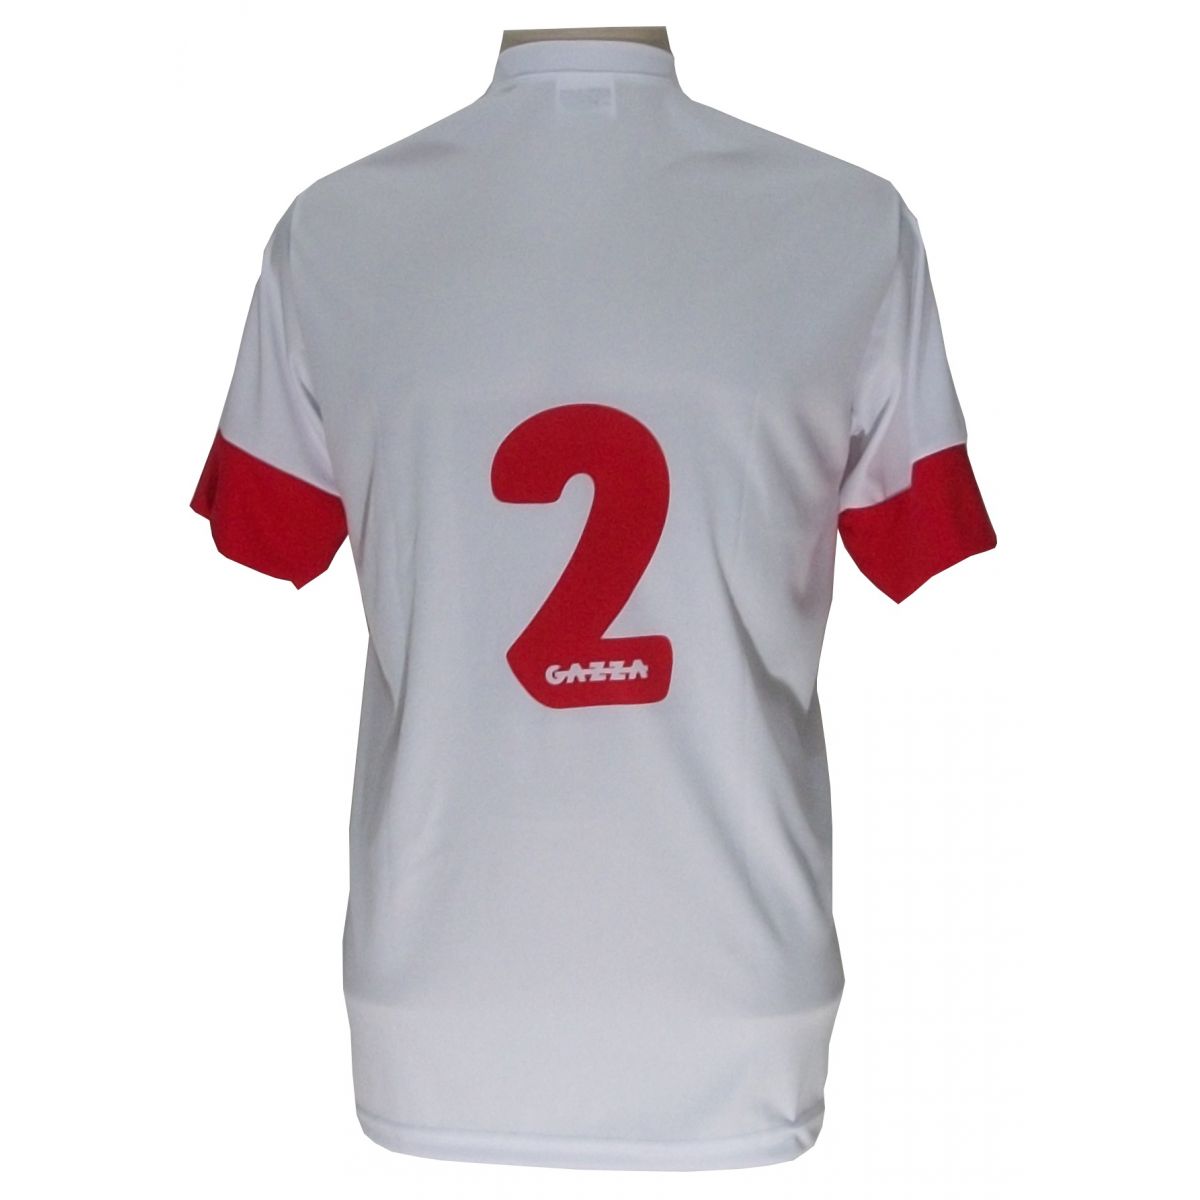 Jogo de Camisa com 14 unidades modelo Sporting Branco/Vermelho + 1 Goleiro + Brindes